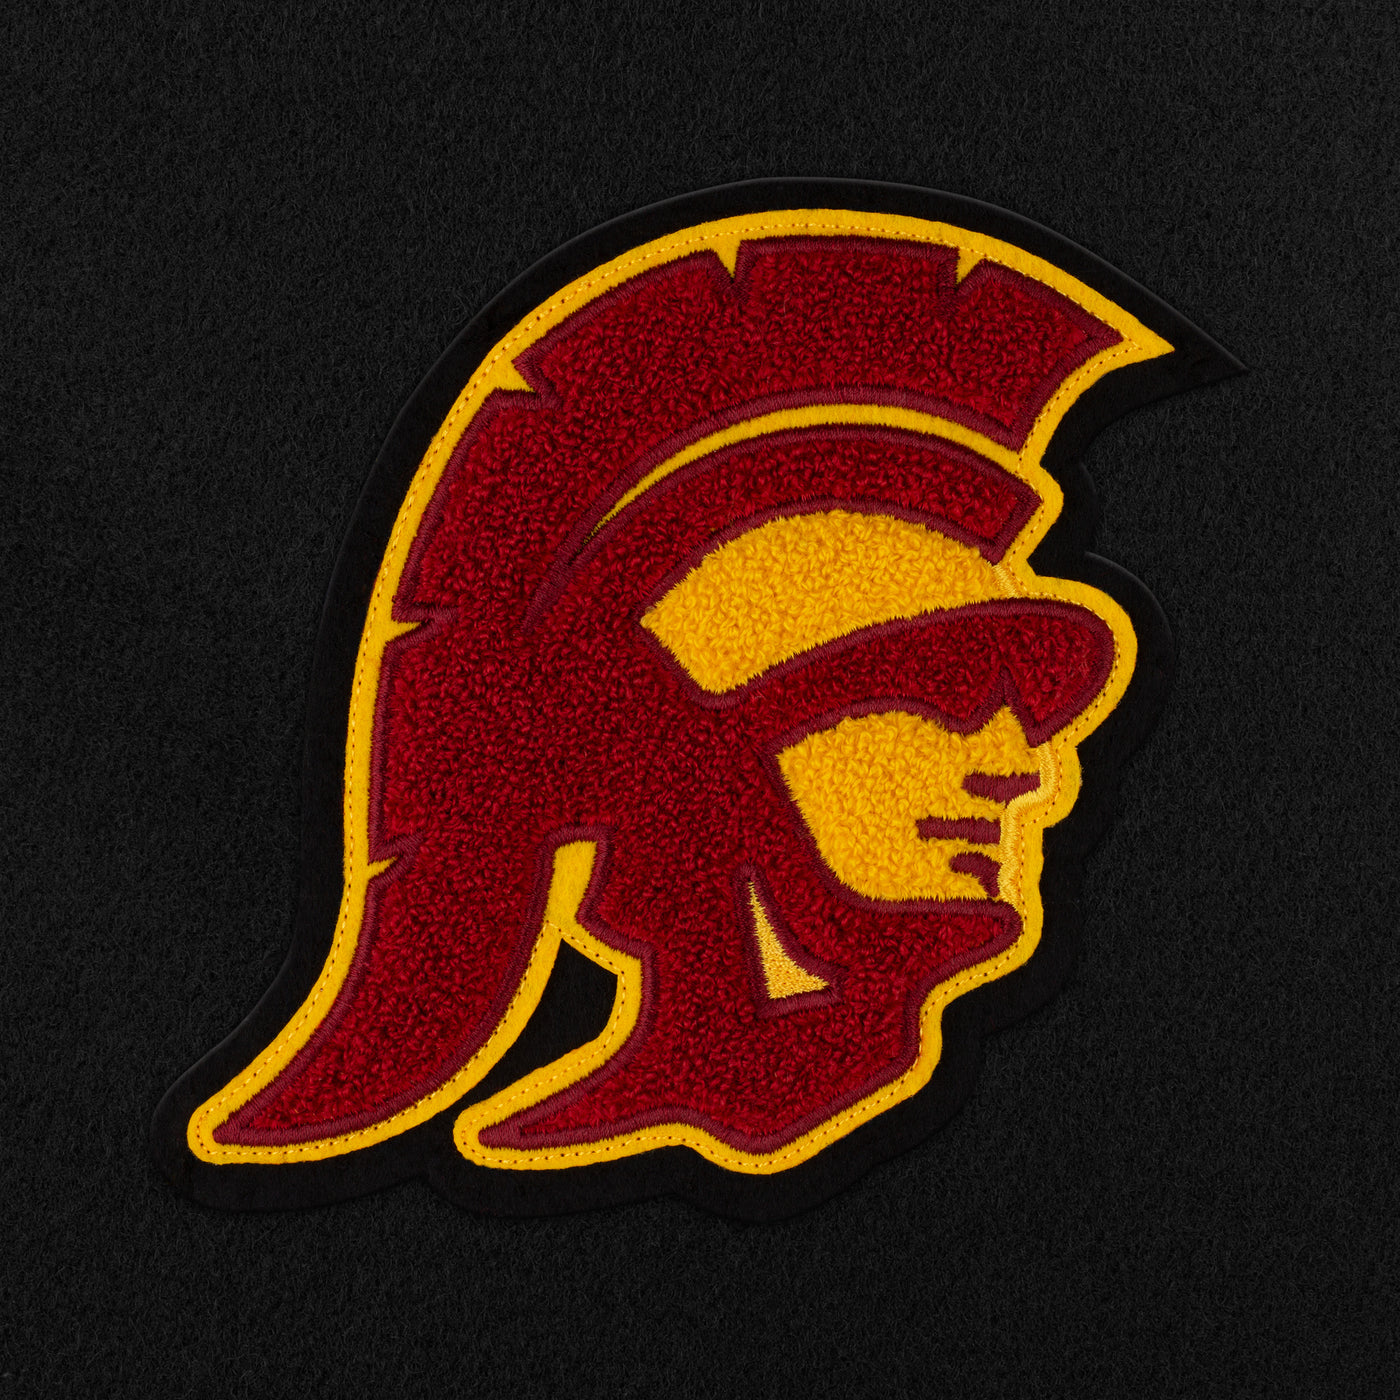 USC Trojans "Trojan/Fight On!" Weekender Duffle Bag